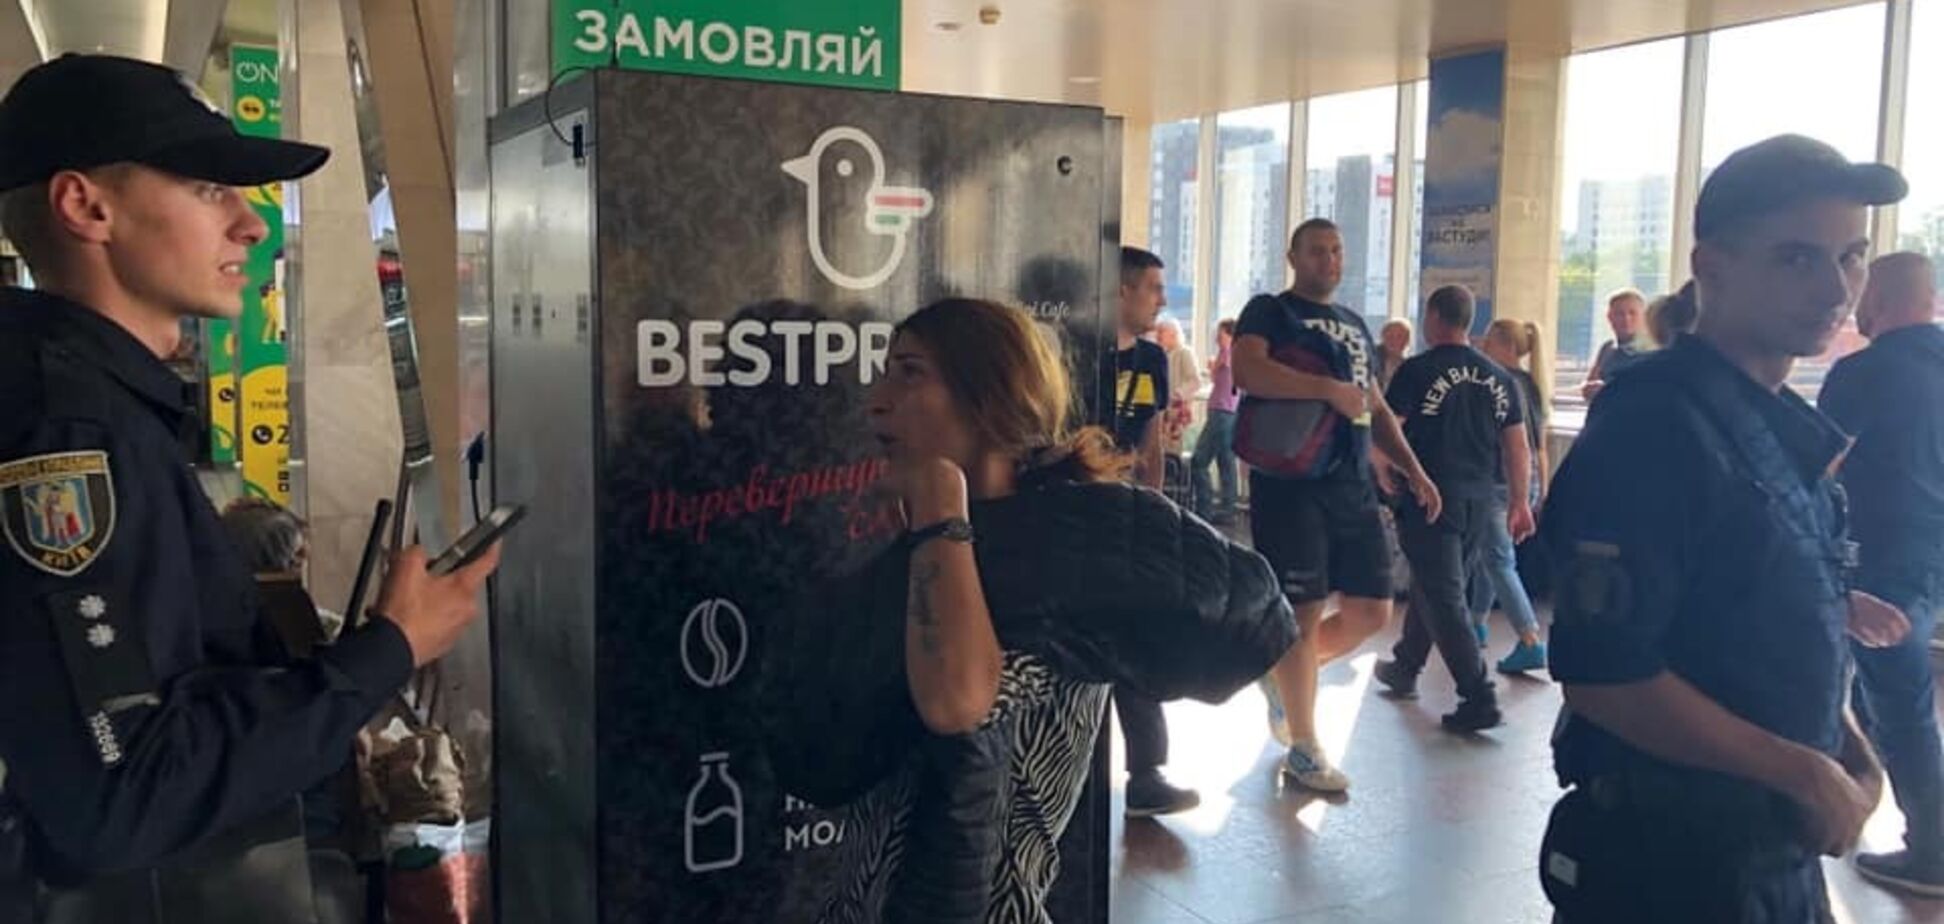 'Работают профессионалы!' В Киеве предупредили о серийных грабежах на вокзалах